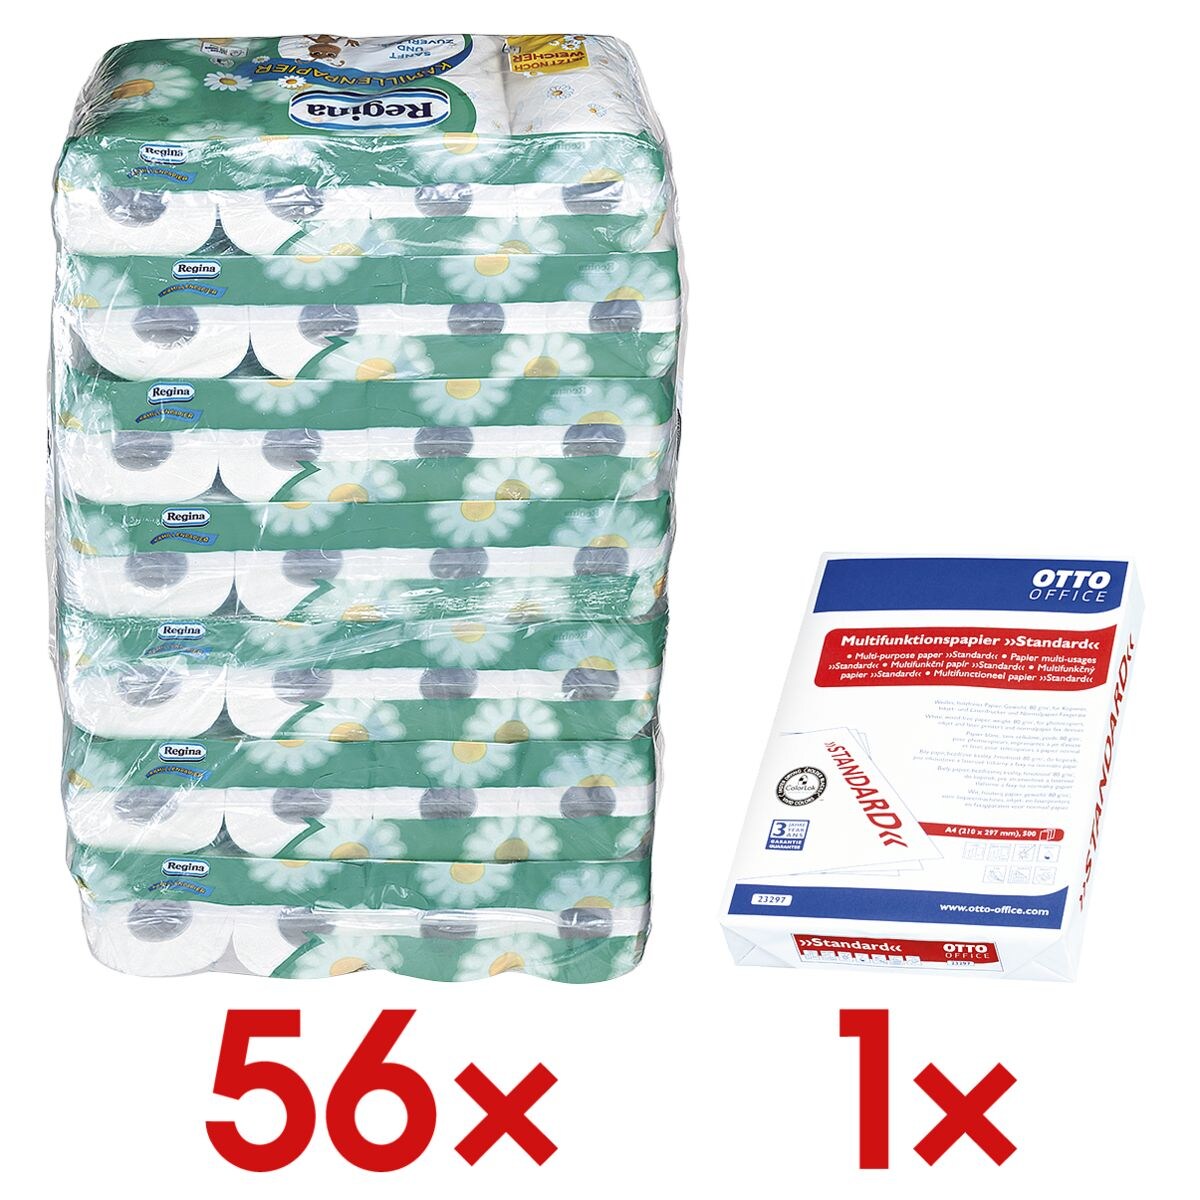 Regina papier toilette camomille 3 épaisseurs, blanc - 56 rouleaux (7 paquets de 8 rouleaux) avec Papier multifonction « Standard »